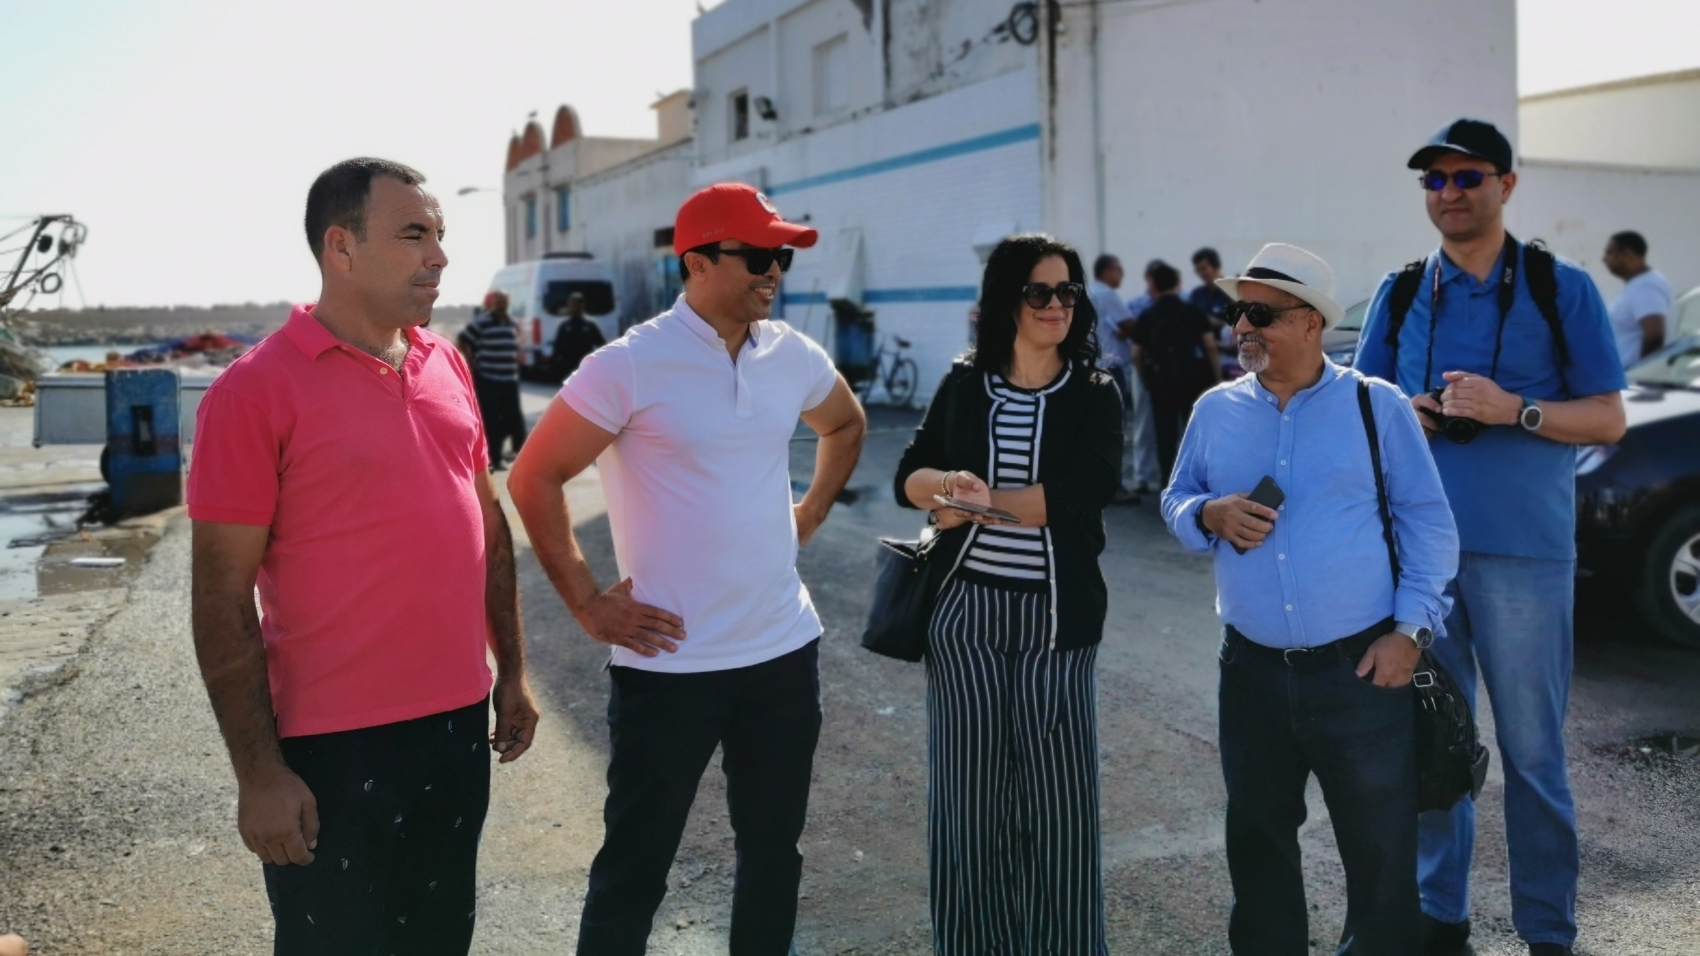 De gauche à droite, Mohamed Bouhjar, secrétaire général de la coopérative Al Amal, Mustapha Amzough, chef du département investissement, promotion et études à l'Agence nationale pour le développement de l'aquaculture, avec des journalistes, dans le port de Ras El Ma.
